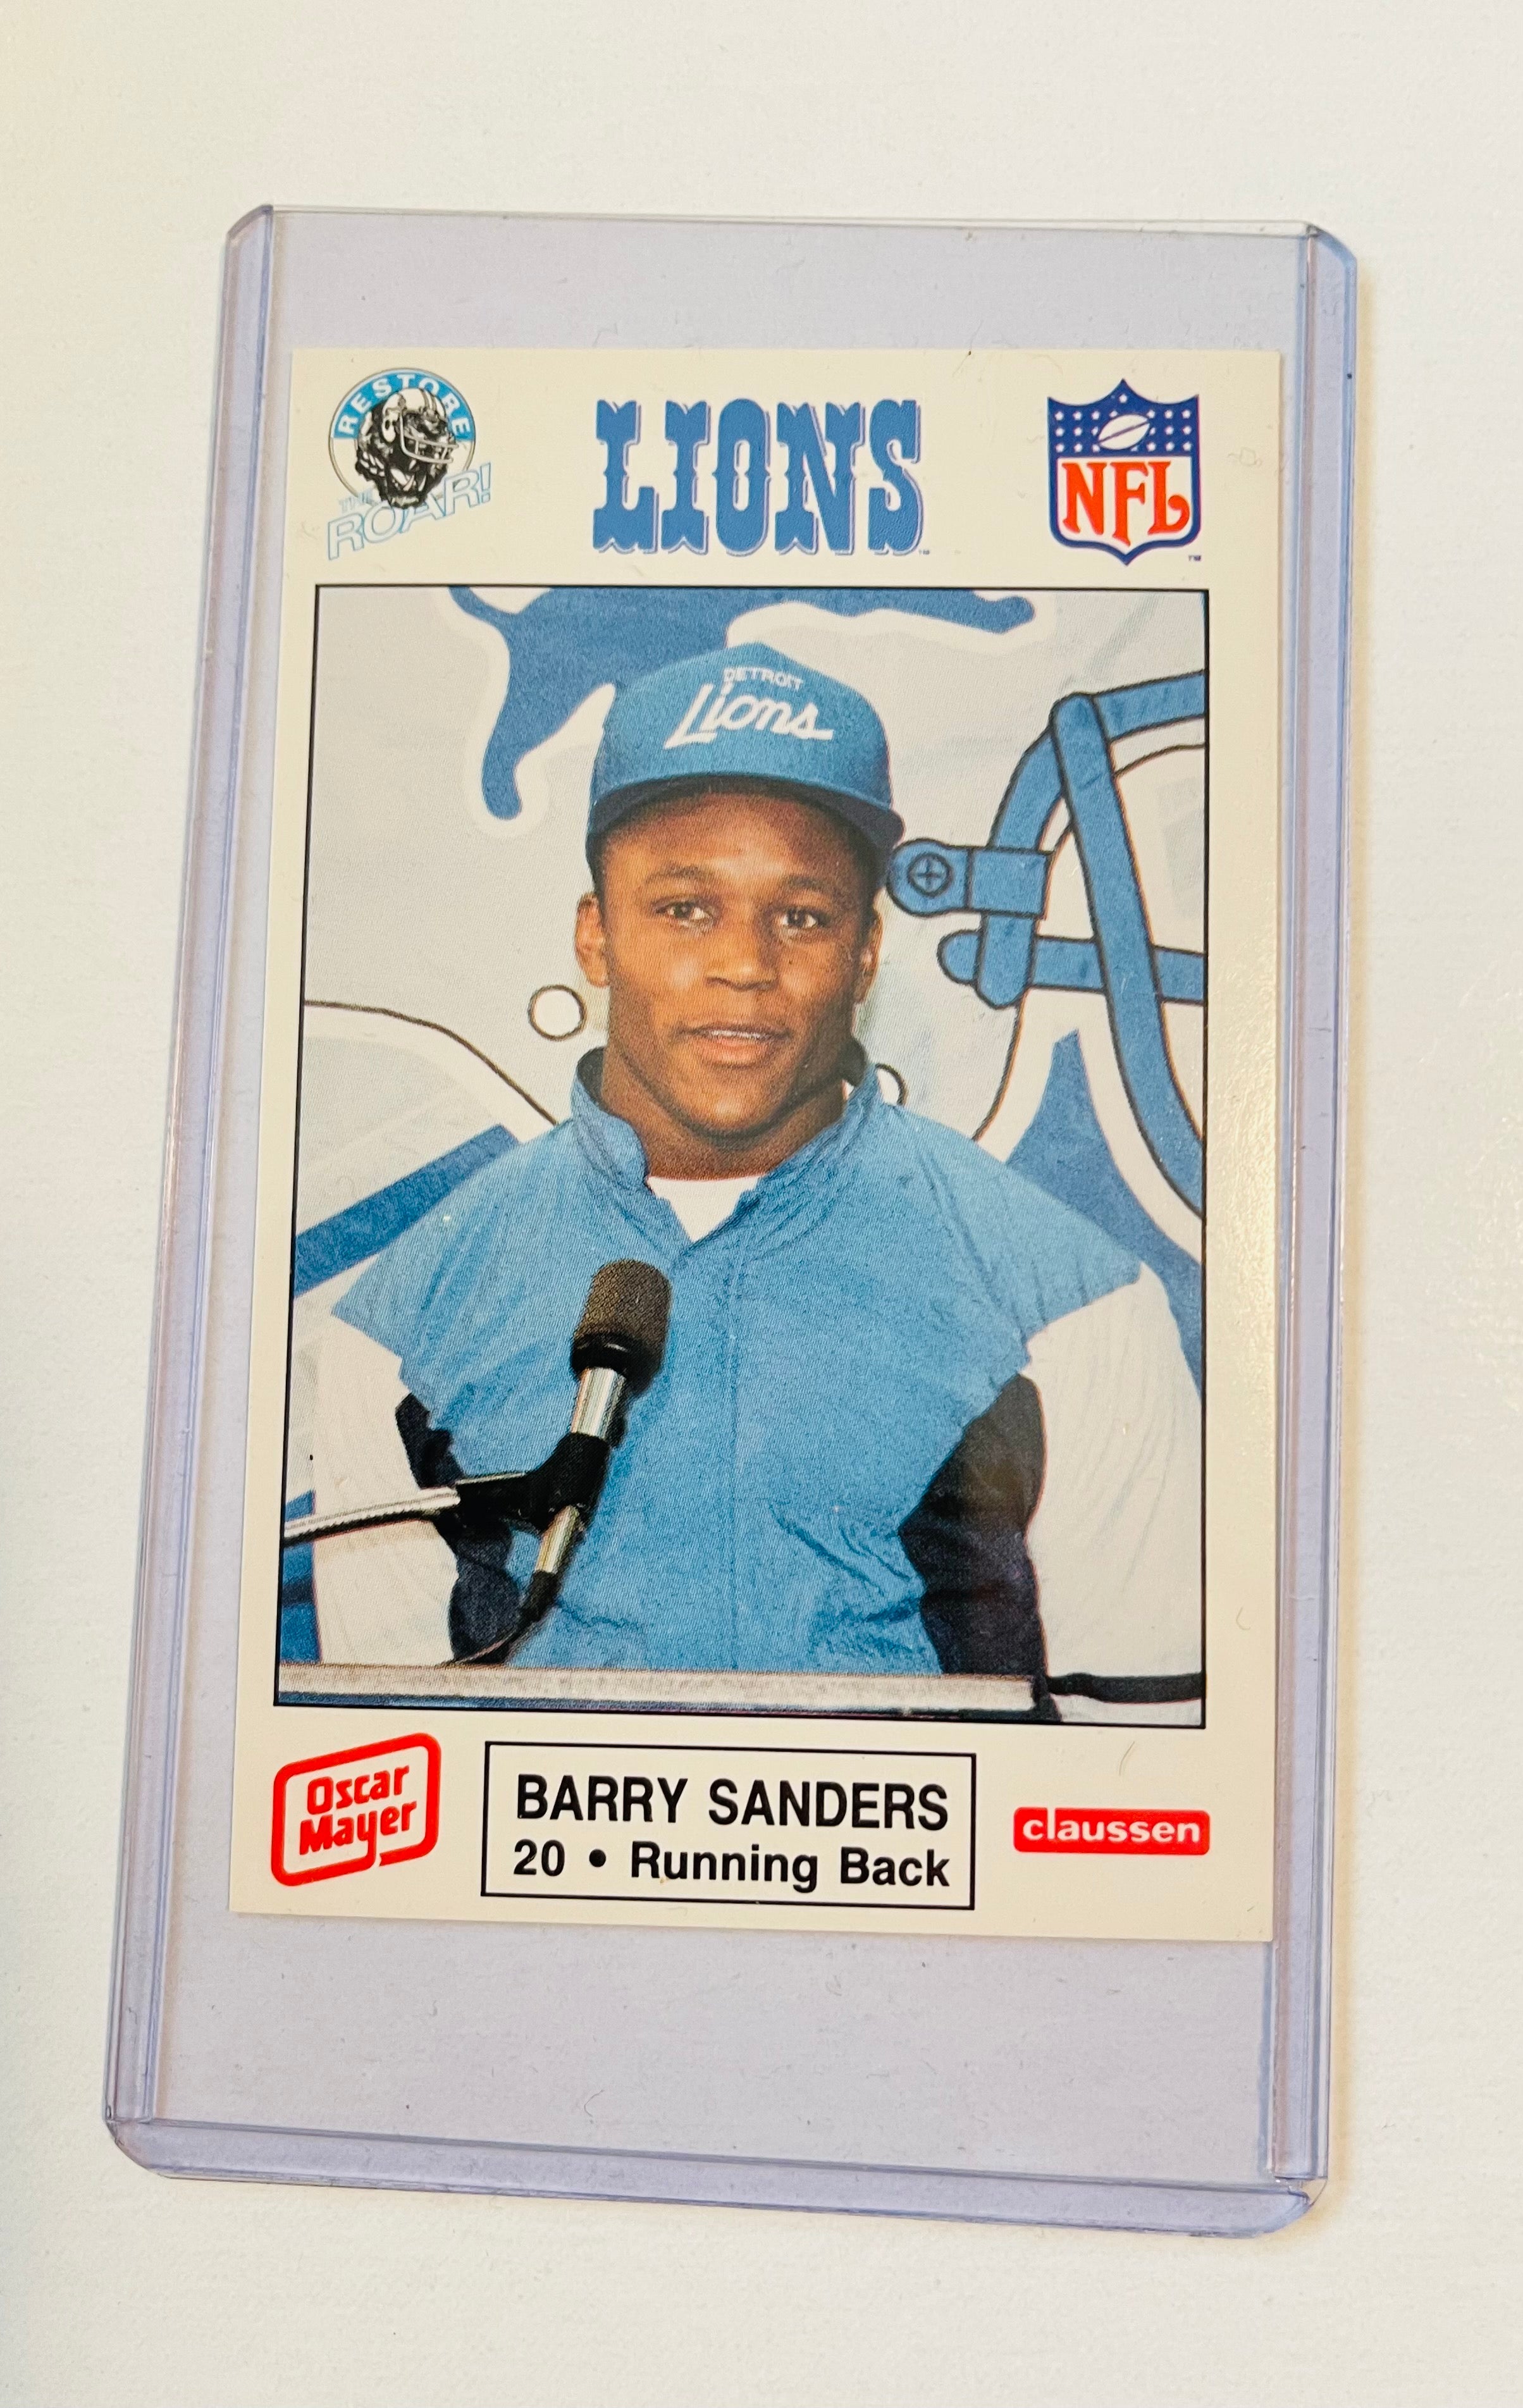 Barry Sanders Oscar Mayer rookie football police rare card 1989